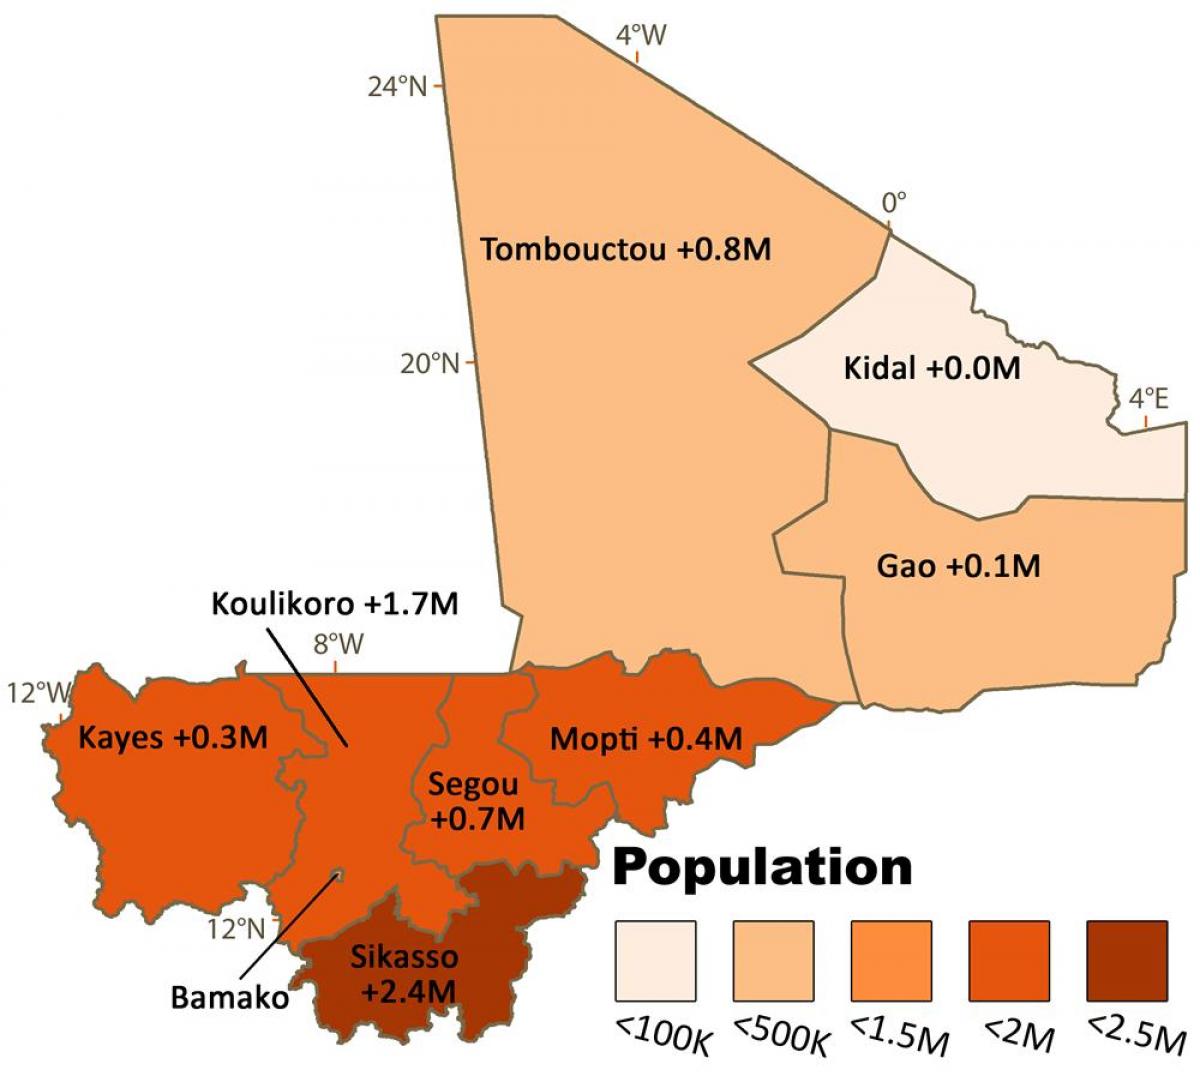 Mapa de la población de Malí